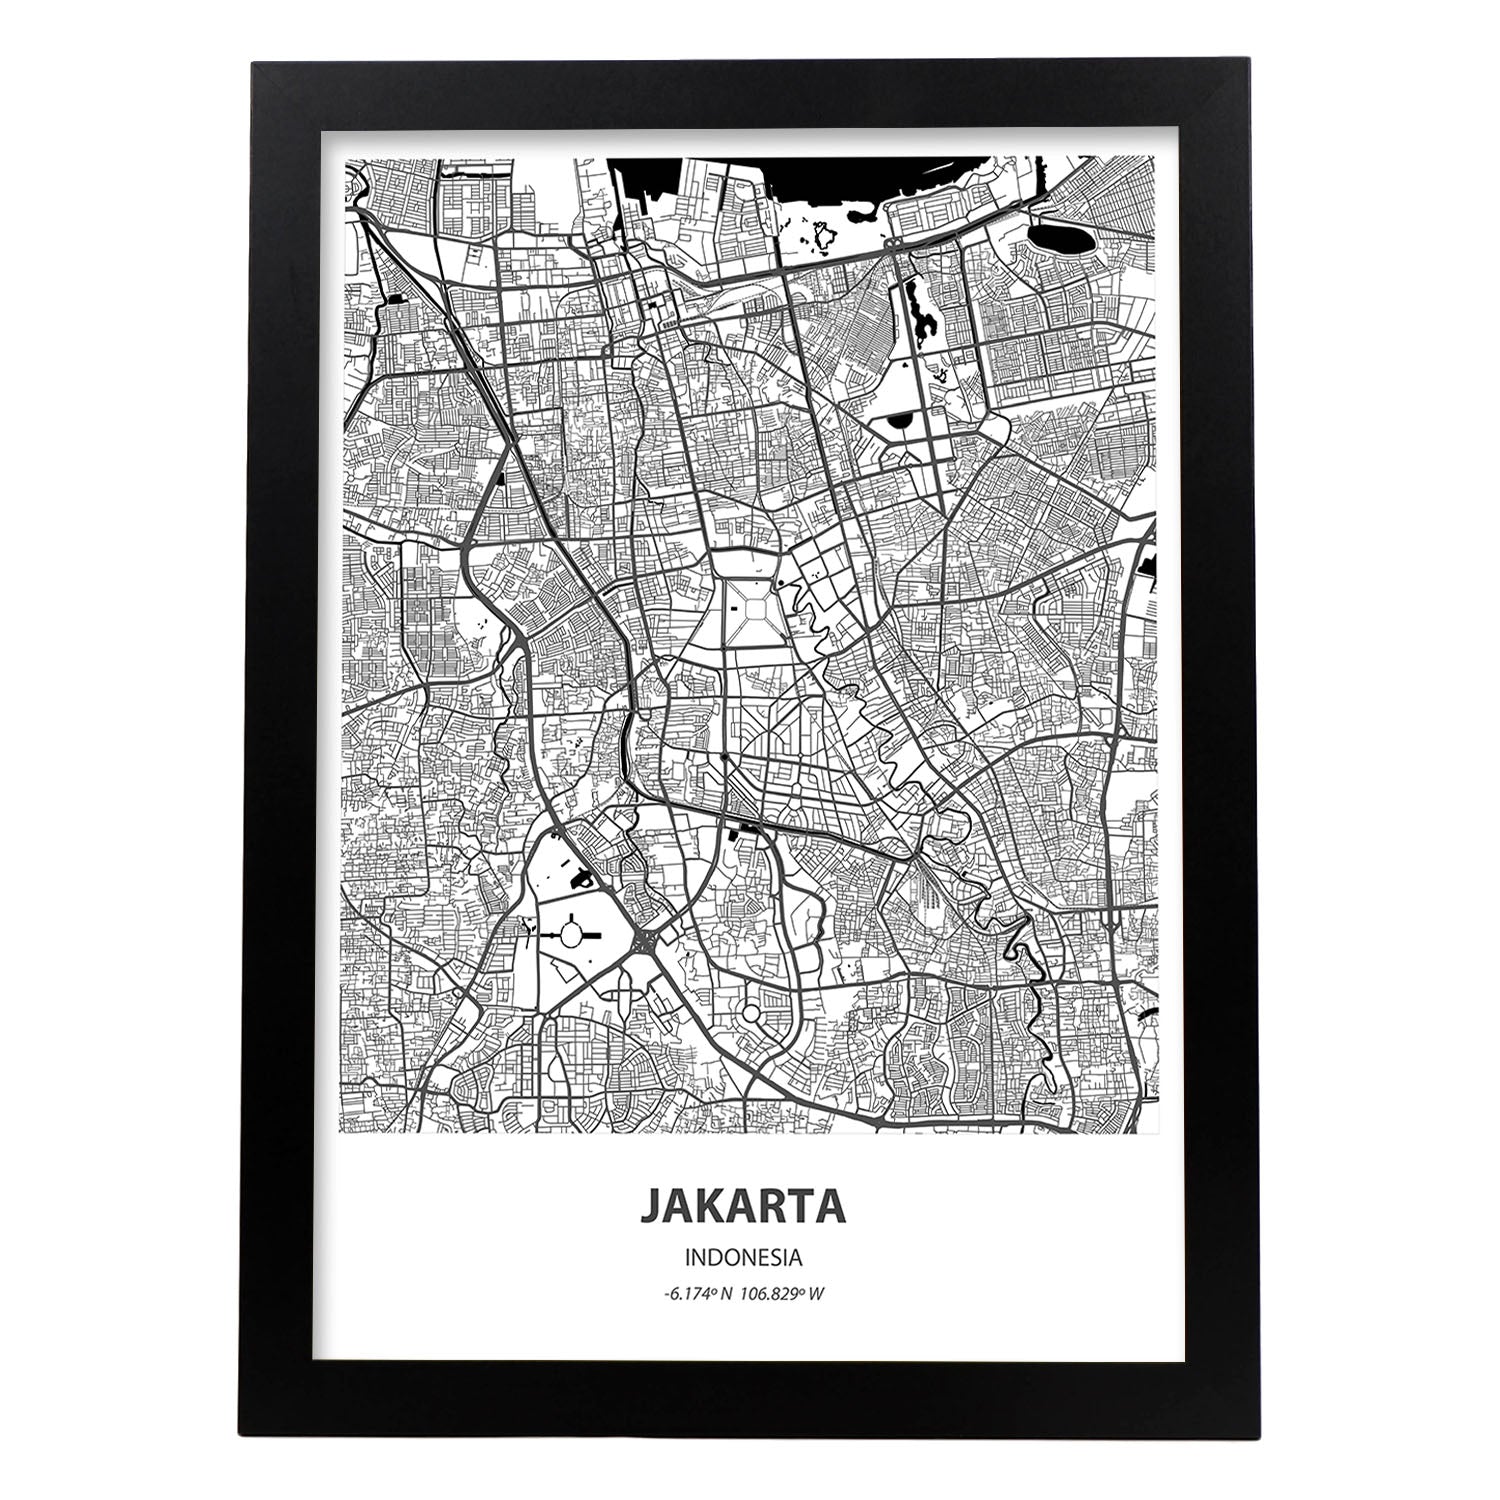 Poster con mapa de Jakarta - Indonesia. Láminas de ciudades de Asia con mares y ríos en color negro.-Artwork-Nacnic-A3-Marco Negro-Nacnic Estudio SL